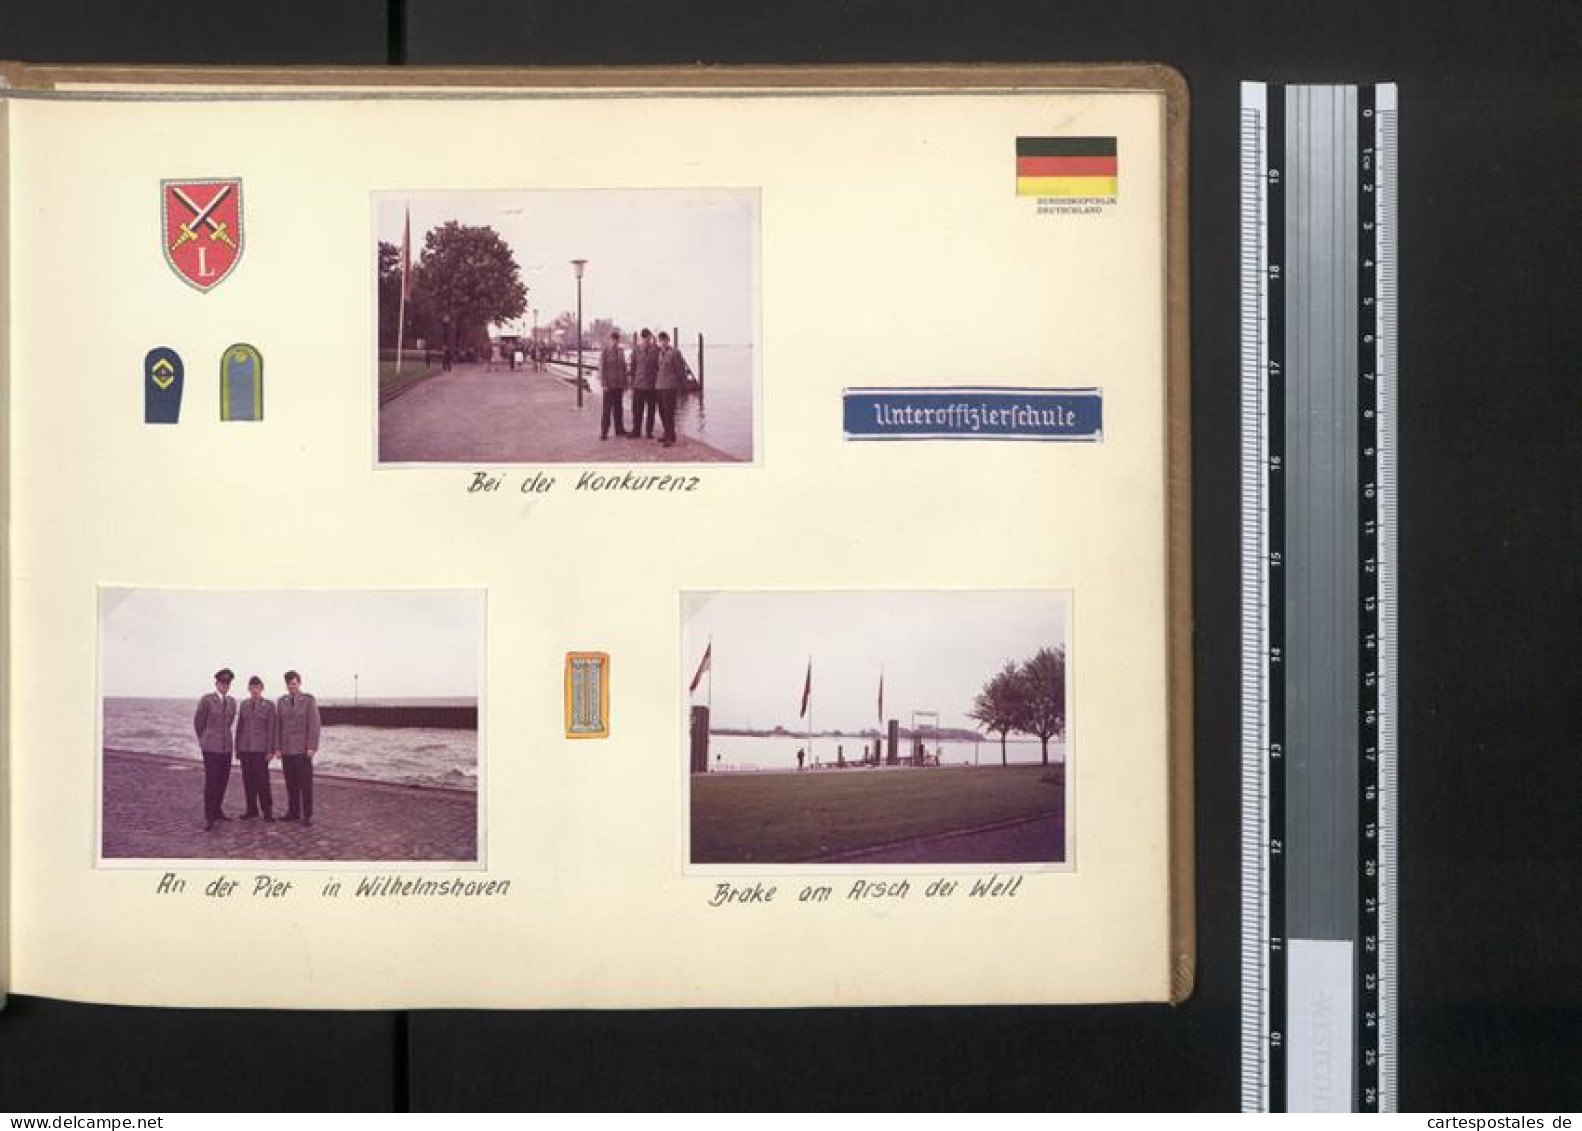 Fotoalbum Mit 67 Fotografien Bundeswehr, Grundausbildung 1969, Panzer, NATO, Jugendlager, Uniform  - Albumes & Colecciones